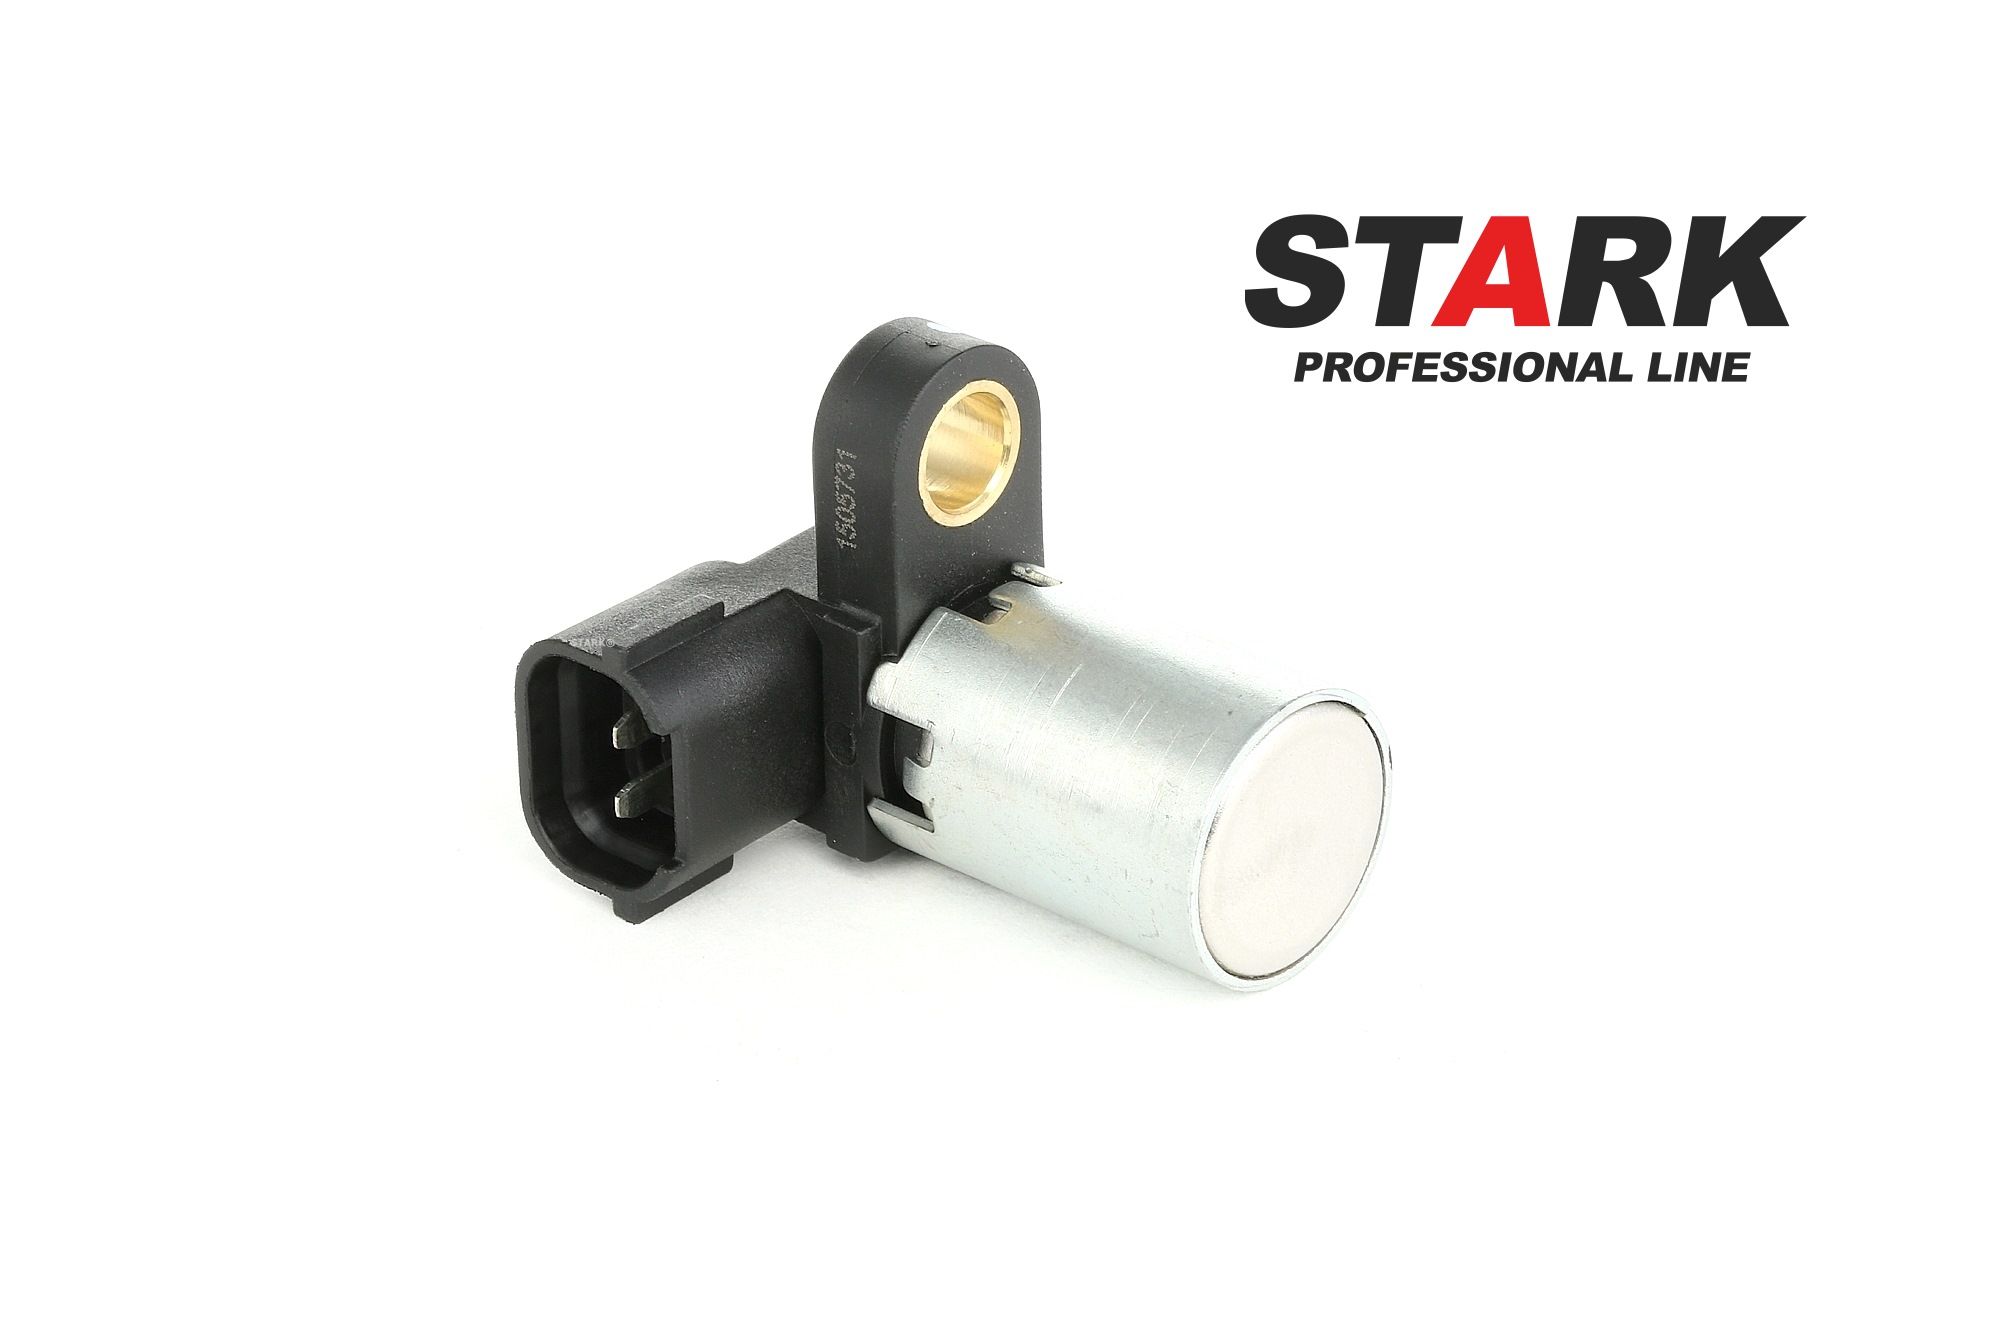 STARK SKSPS-0370073 Camshaft position sensor Inductive Sensor, Hall Sensor